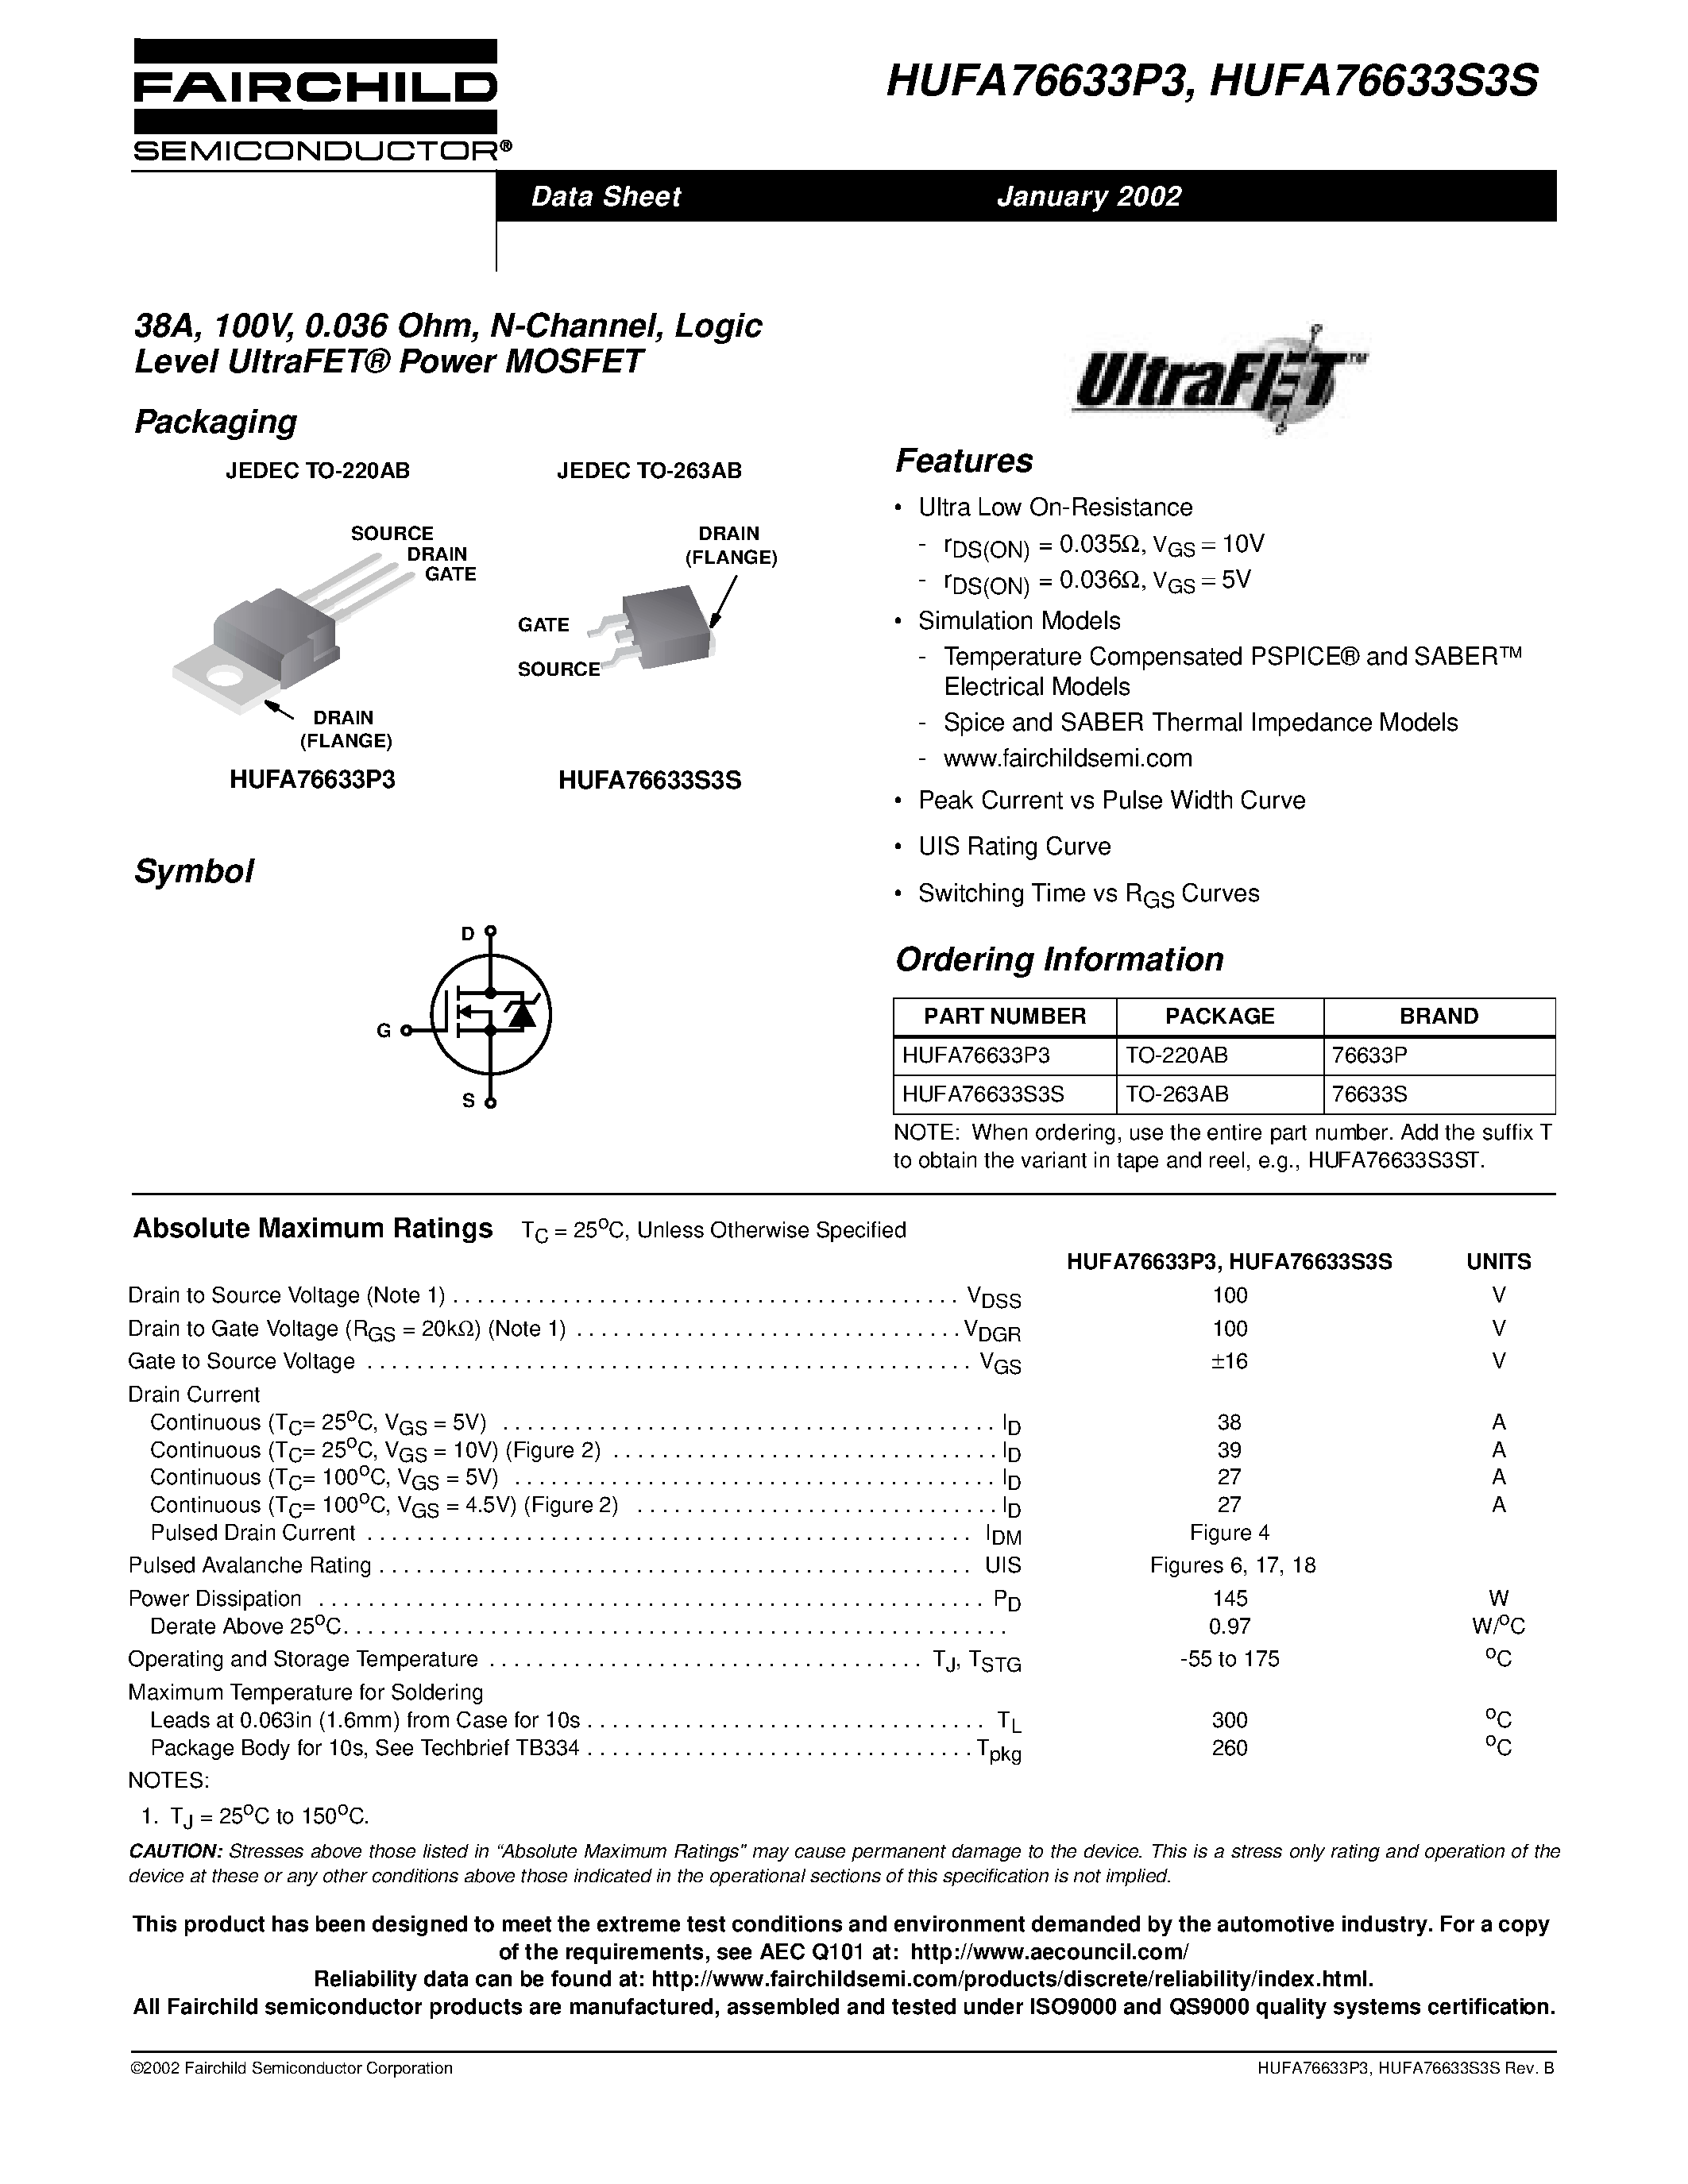 Даташит HUFA76633P3 - 38A/ 100V/ 0.036 Ohm/ N-Channel/ Logic Level UltraFET Power MOSFET страница 1